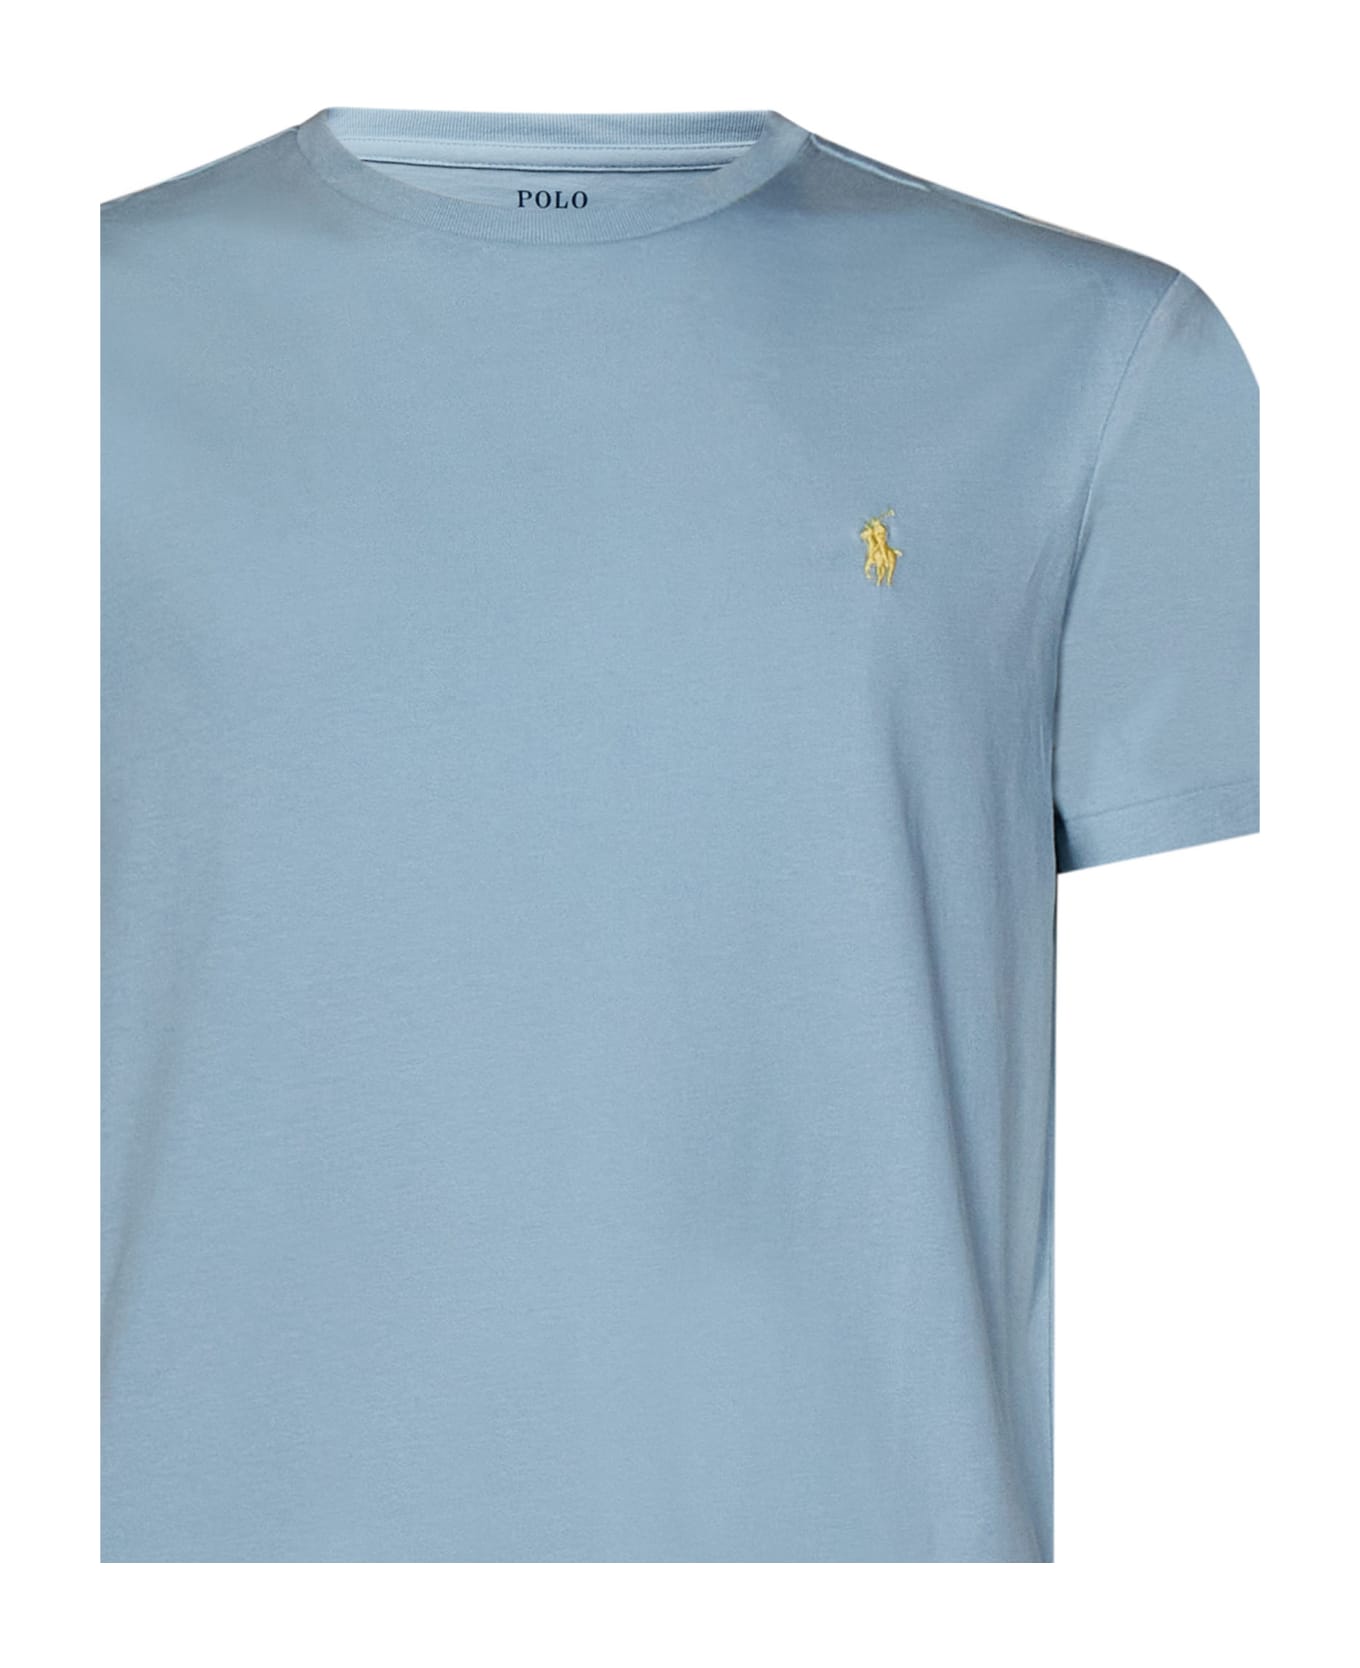 Polo Ralph Lauren T-shirt Polo Ralph Lauren - Light Blue